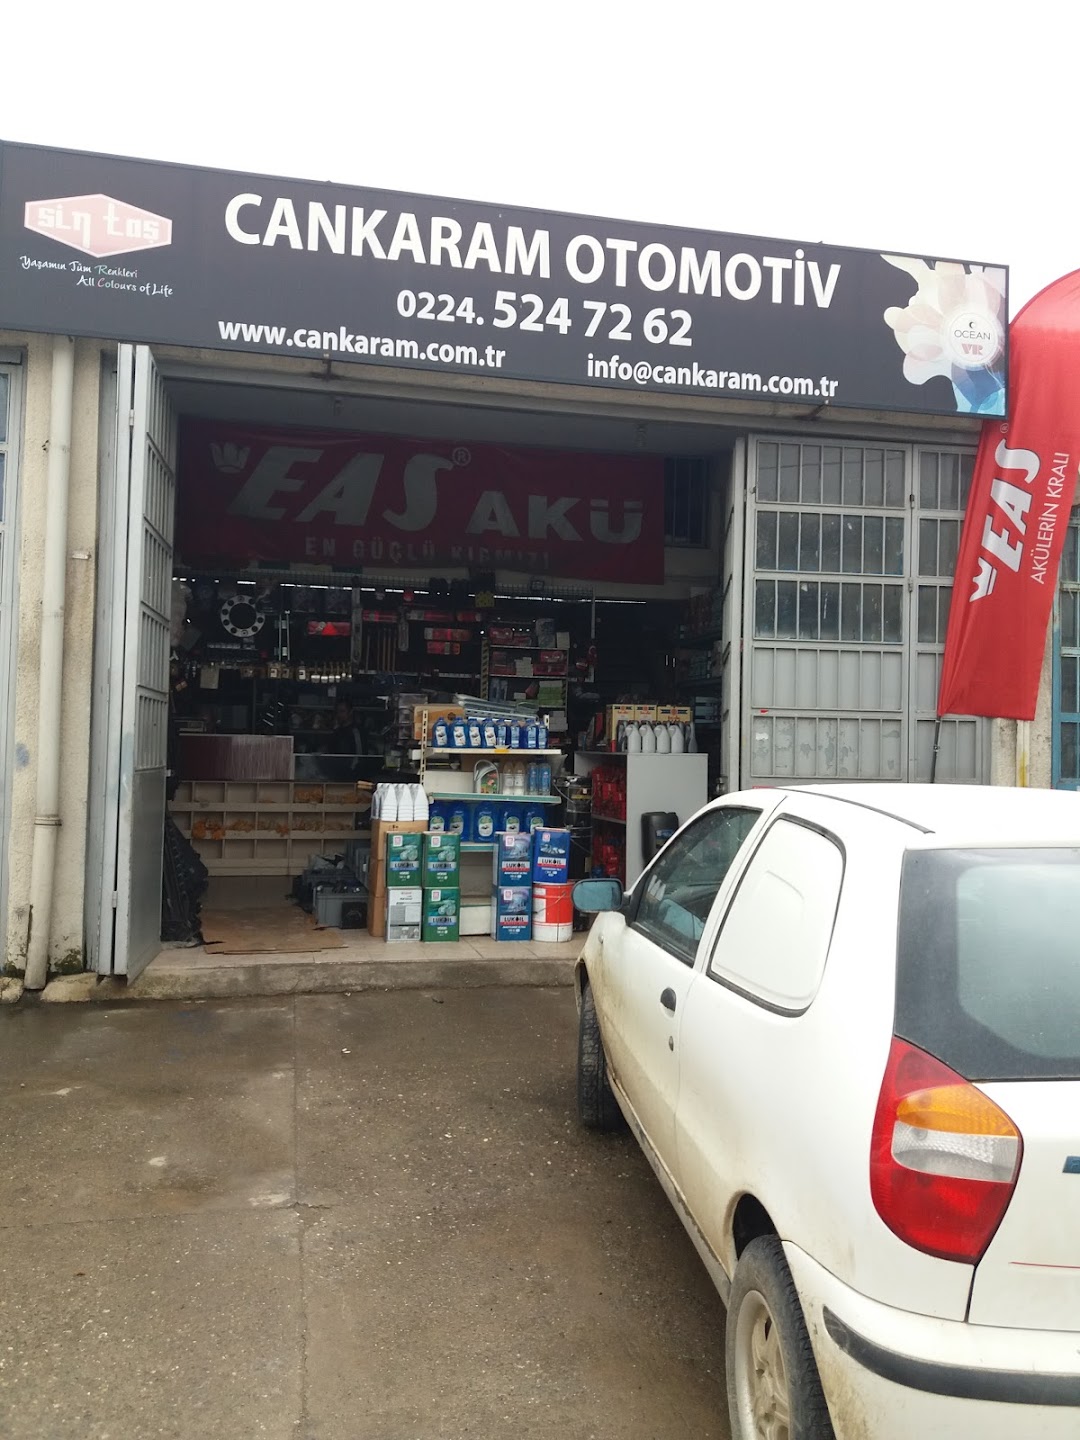 Cankaram Otomotiv